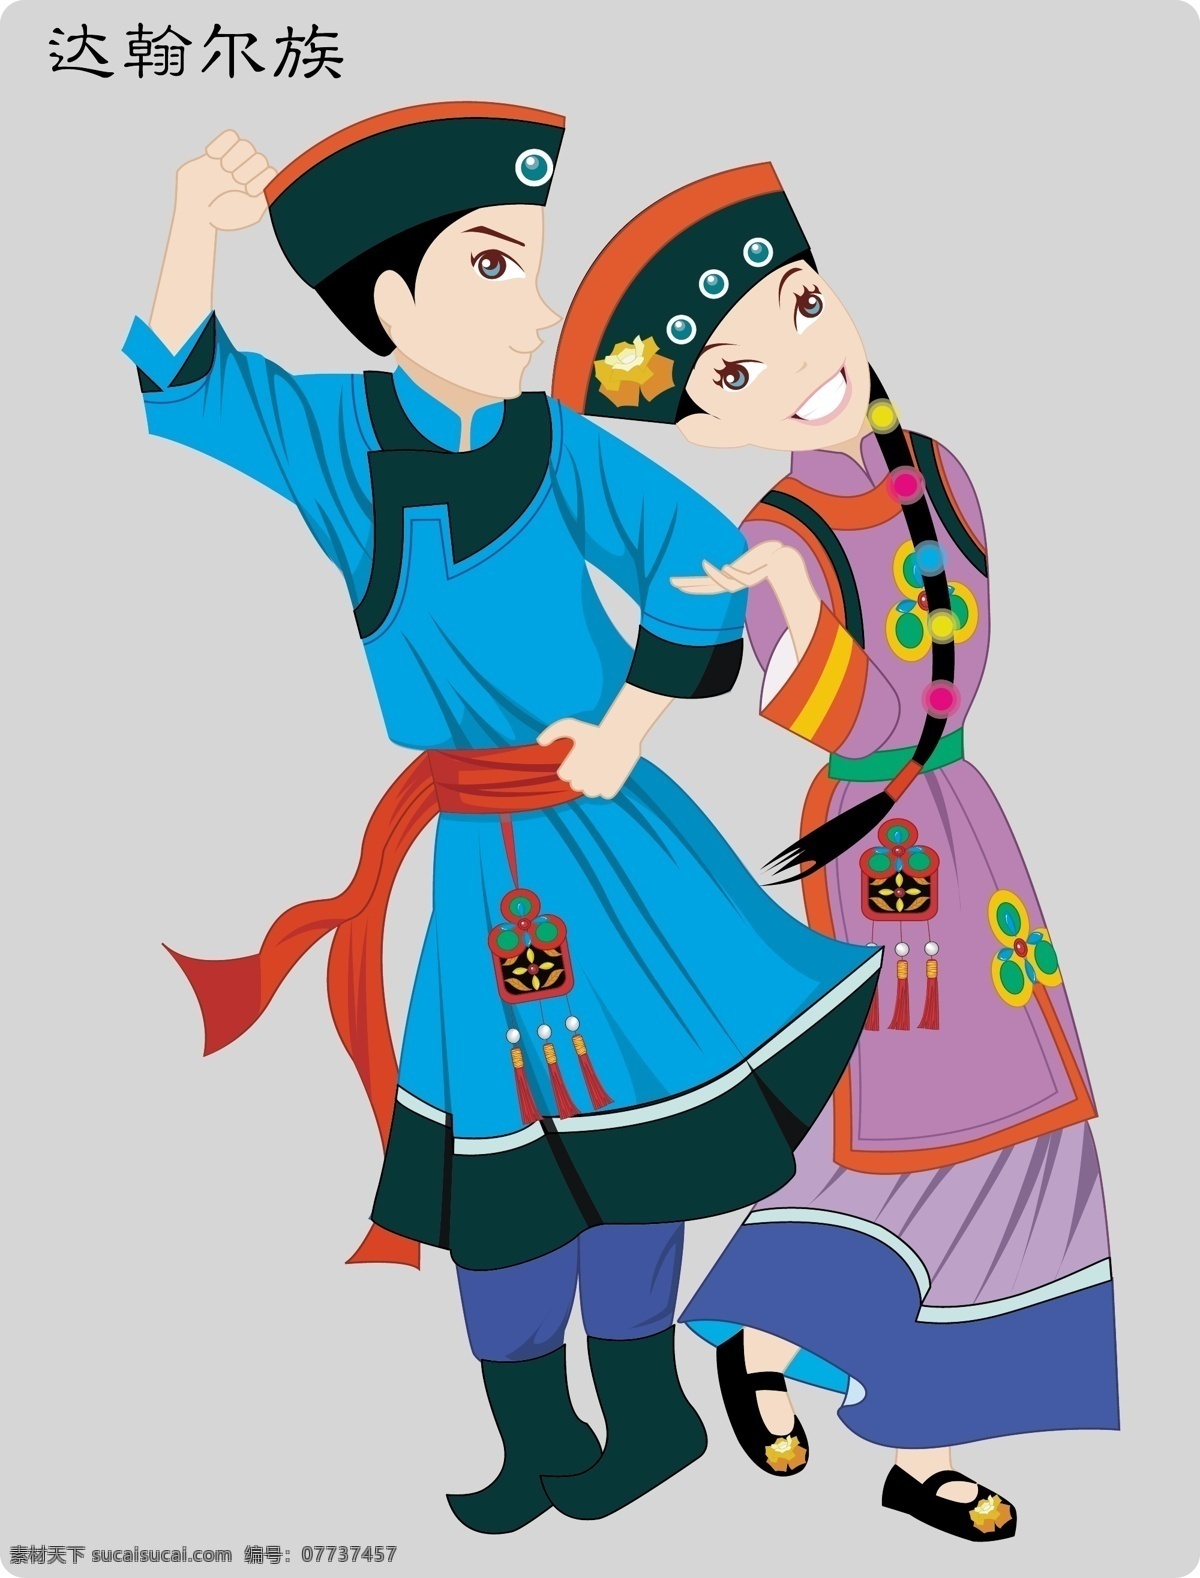 达翰尔族舞蹈 少数民族 舞蹈 人物 卡通 服装 中国 地方 活泼